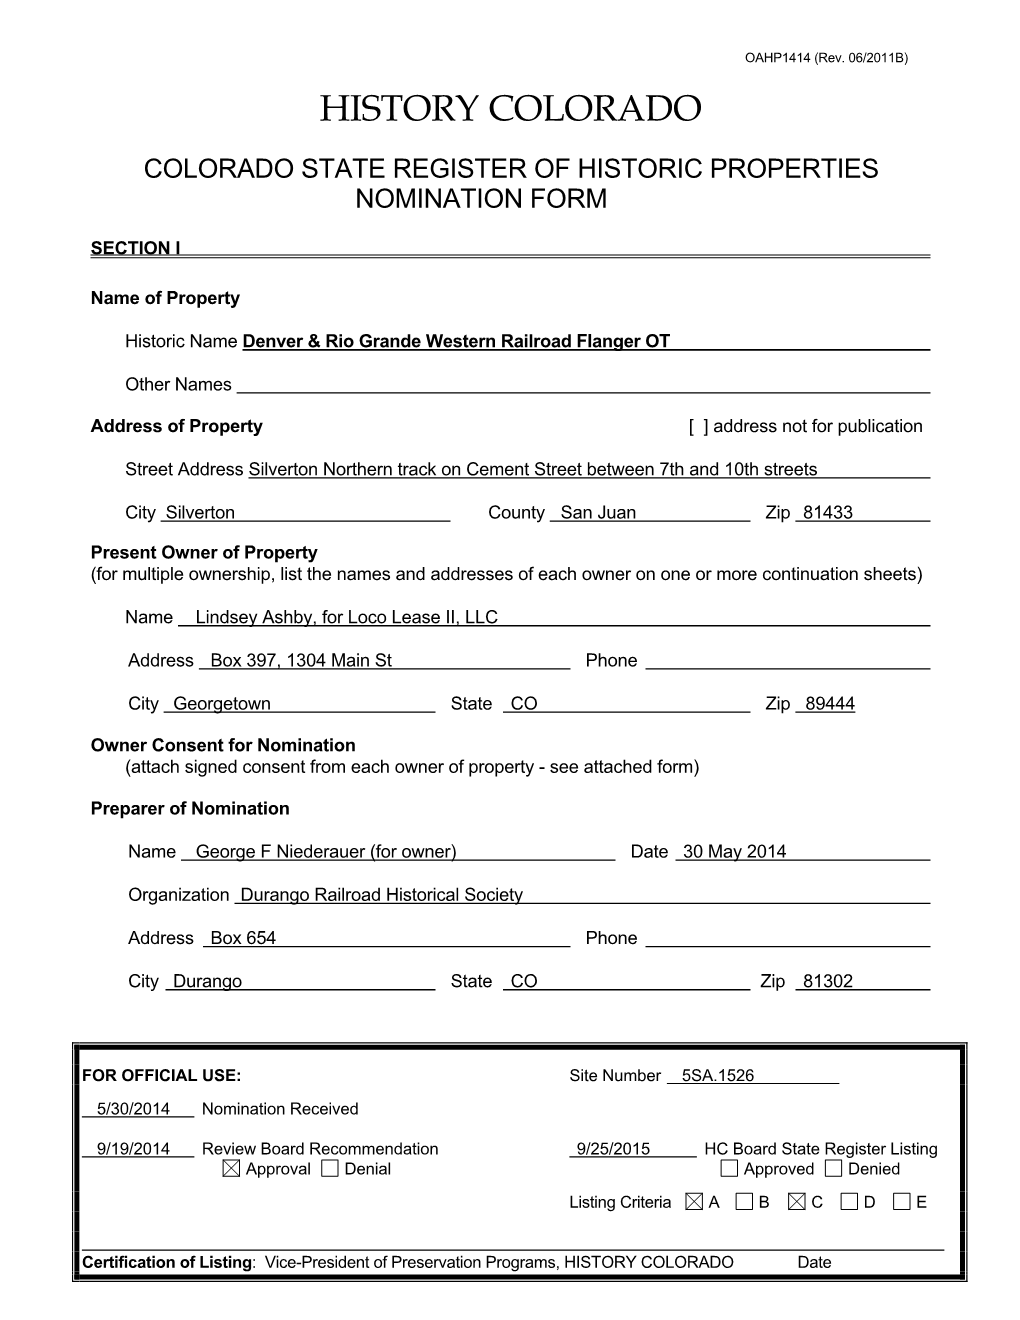 Denver & Rio Grande Western Flanger OT State Register Nomination, 5SA.1526